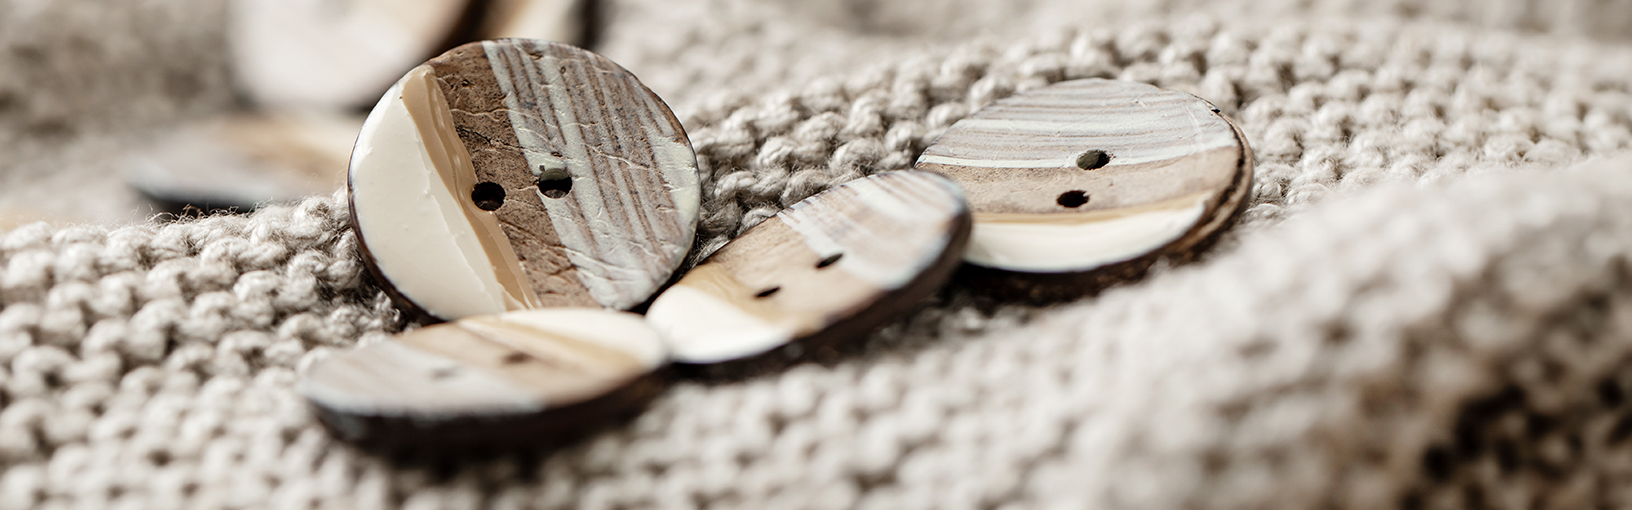 INOVATIVNO, ERGONOMSKO - NAJVIŠI KVALITET Lana Grossa Igle | Kružno pletenje iglice | Dizajnirajte drvenu prirodu